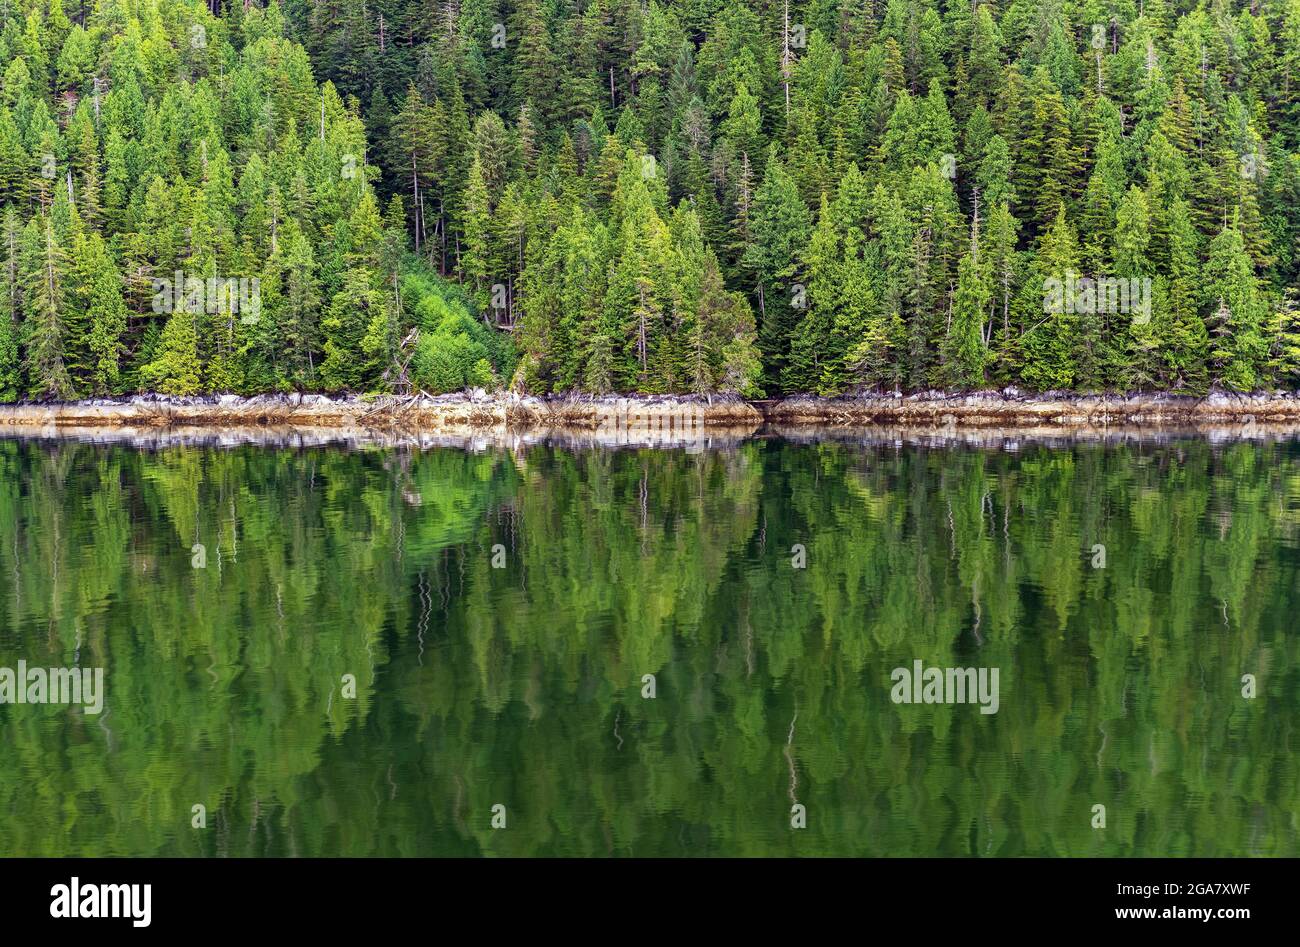 Réflexion de forêt de pins le long de la croisière de passage intérieur, île de Vancouver, Colombie-Britannique, Canada. Banque D'Images